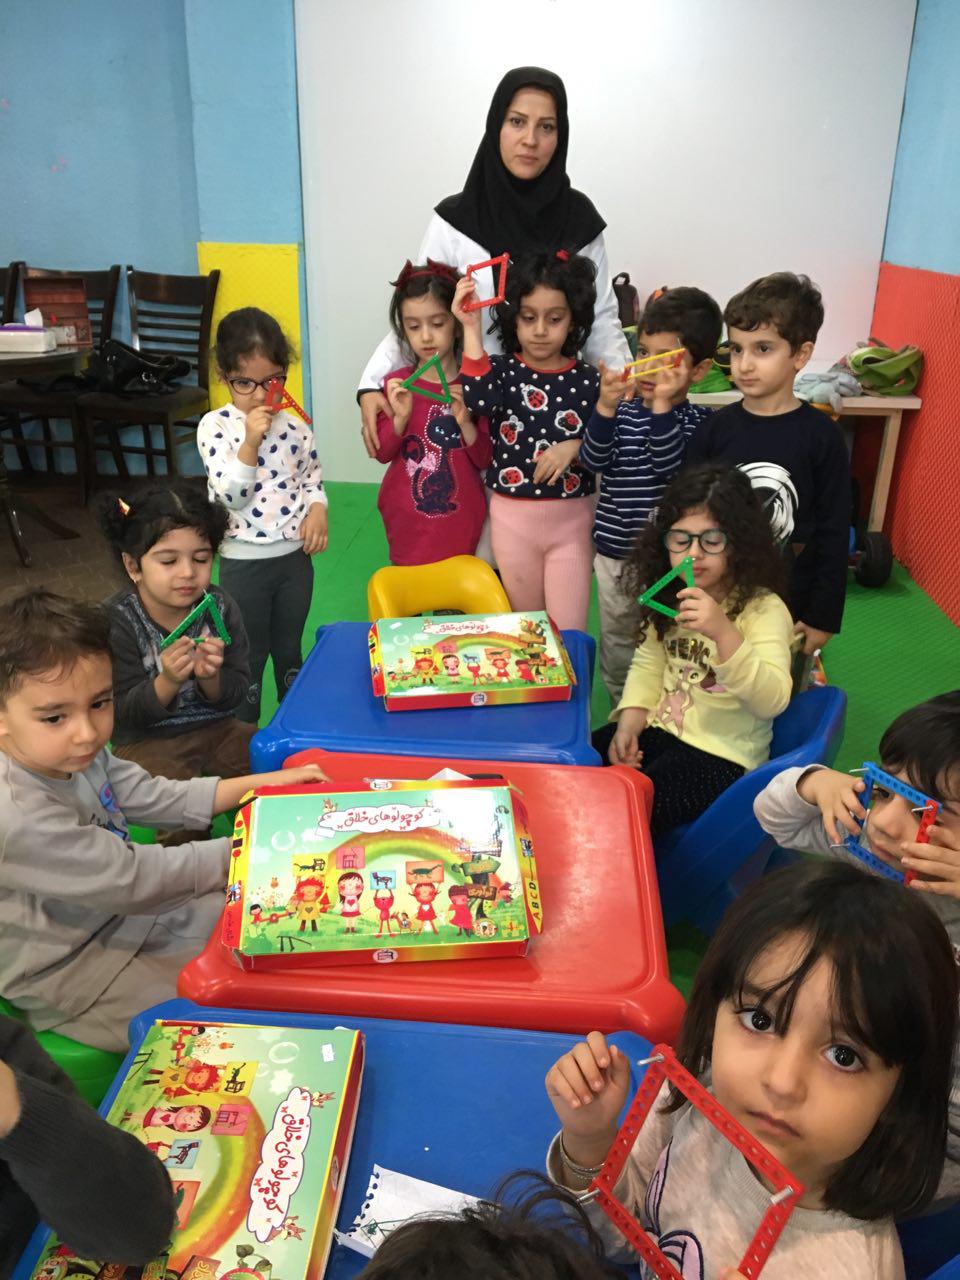  کلاس ربات کوچولو در رشت خانم رضا نژاد